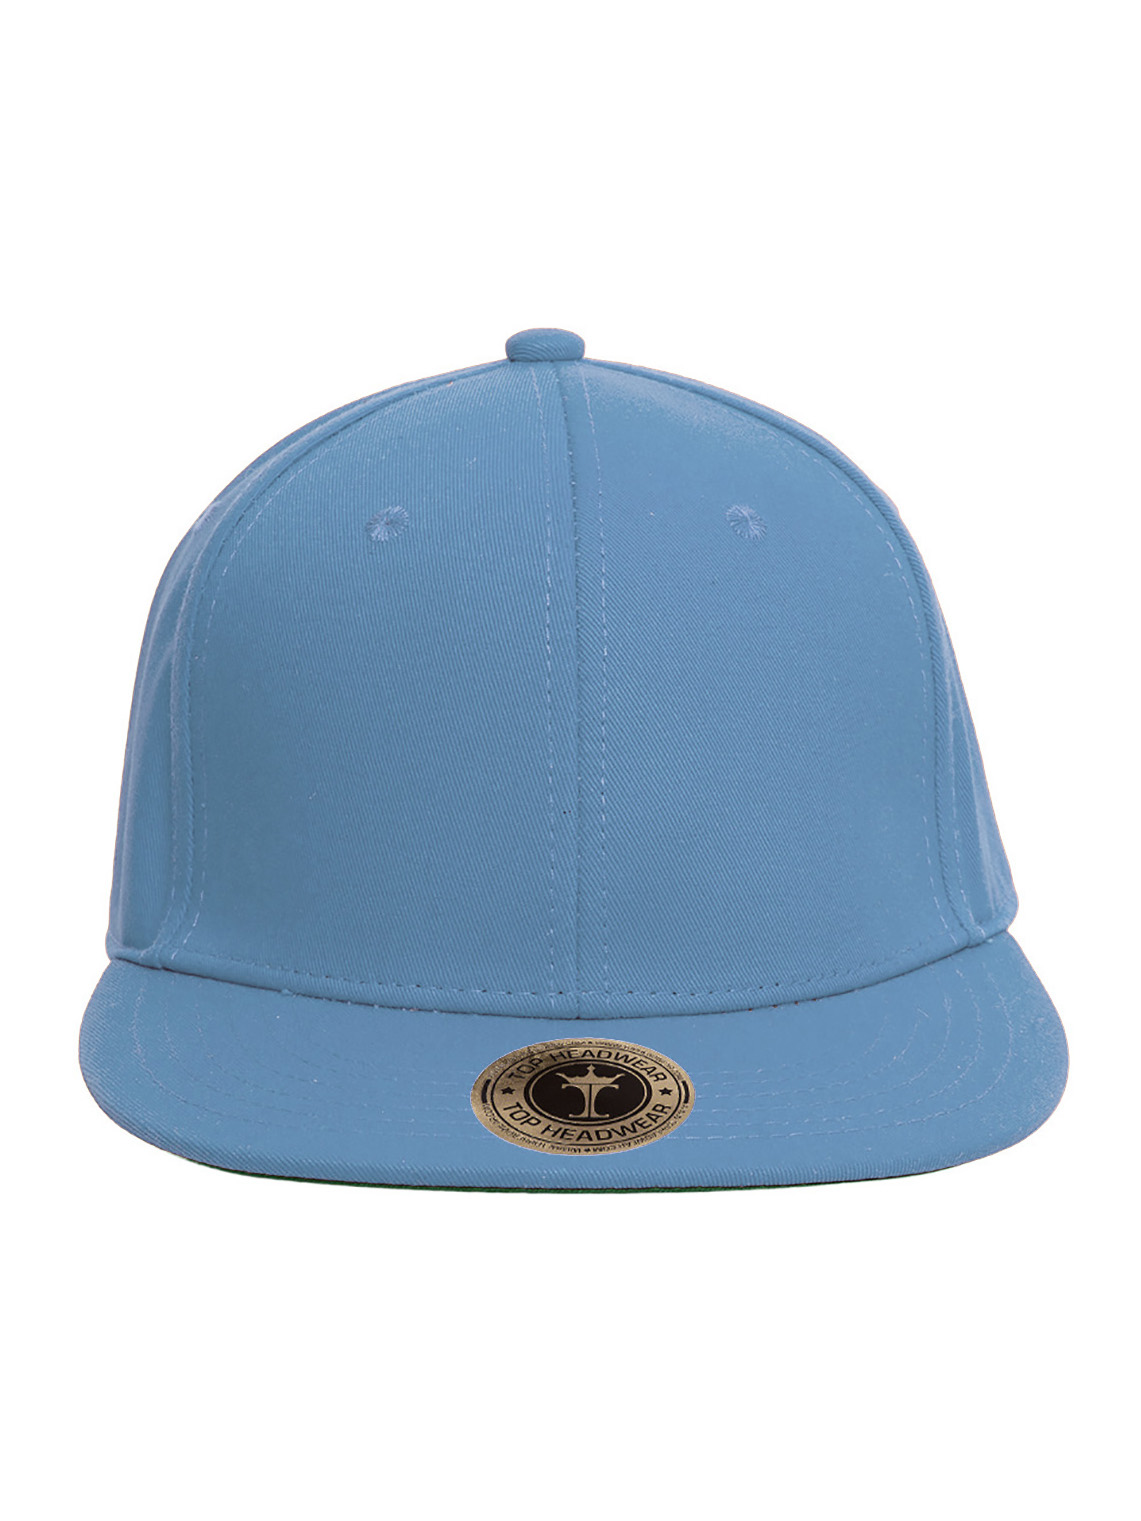 Top Headwear Plain Flat Bill Fitted Hat, Sky Blue 7 3/4 - image 2 of 4